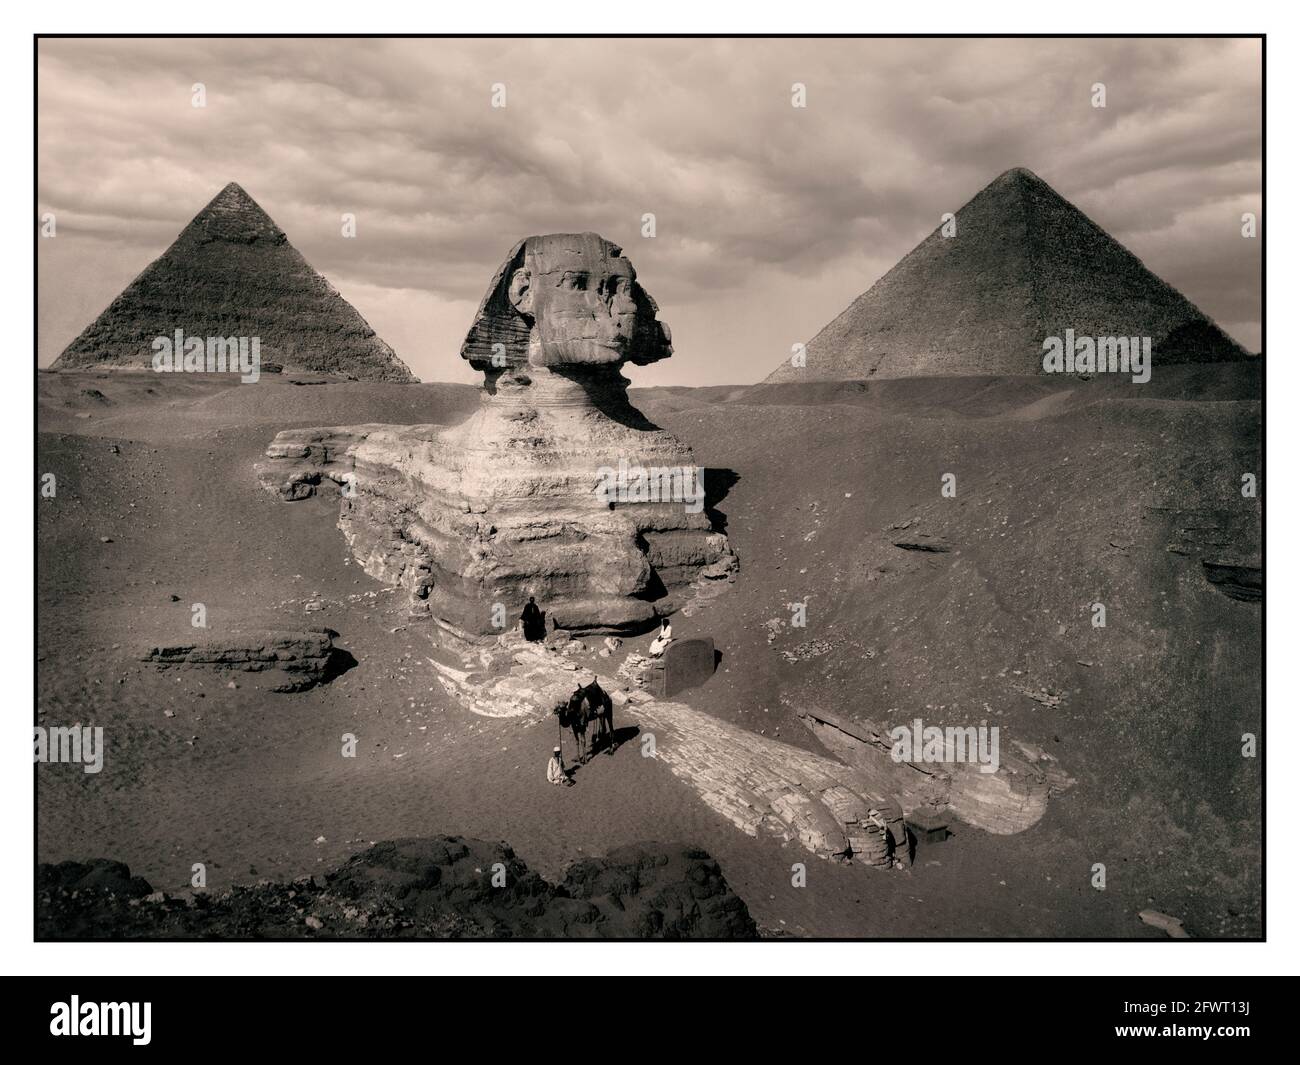 GIZA 1880 Vintage Pyramide Giza. Pyramide von Khafre und Sphinx 1880 s s s&w Sepia Bild von Giza. Ca. 2575 BC-ca. 2465 v. Chr. (Pyramide und Sphinx) Pyramiden von Gizeh, Muḩāfaz̧at Maţrūḩ, Ägypten Afrika Ägyptisch-ägyptisch, alt, 4. Dynastie die große Sphinx von Gizeh, allgemein als Sphinx von Gizeh oder einfach nur Sphinx bezeichnet, ist eine Kalksteinstatue einer liegenden Sphinx, Es ist ein mythisches Wesen mit dem Körper eines Löwen und dem Kopf eines Menschen, der direkt von Westen nach Osten blickt und steht auf dem Gizeh-Plateau am Westufer des Nils in Gizeh, Ägypten. Stockfoto